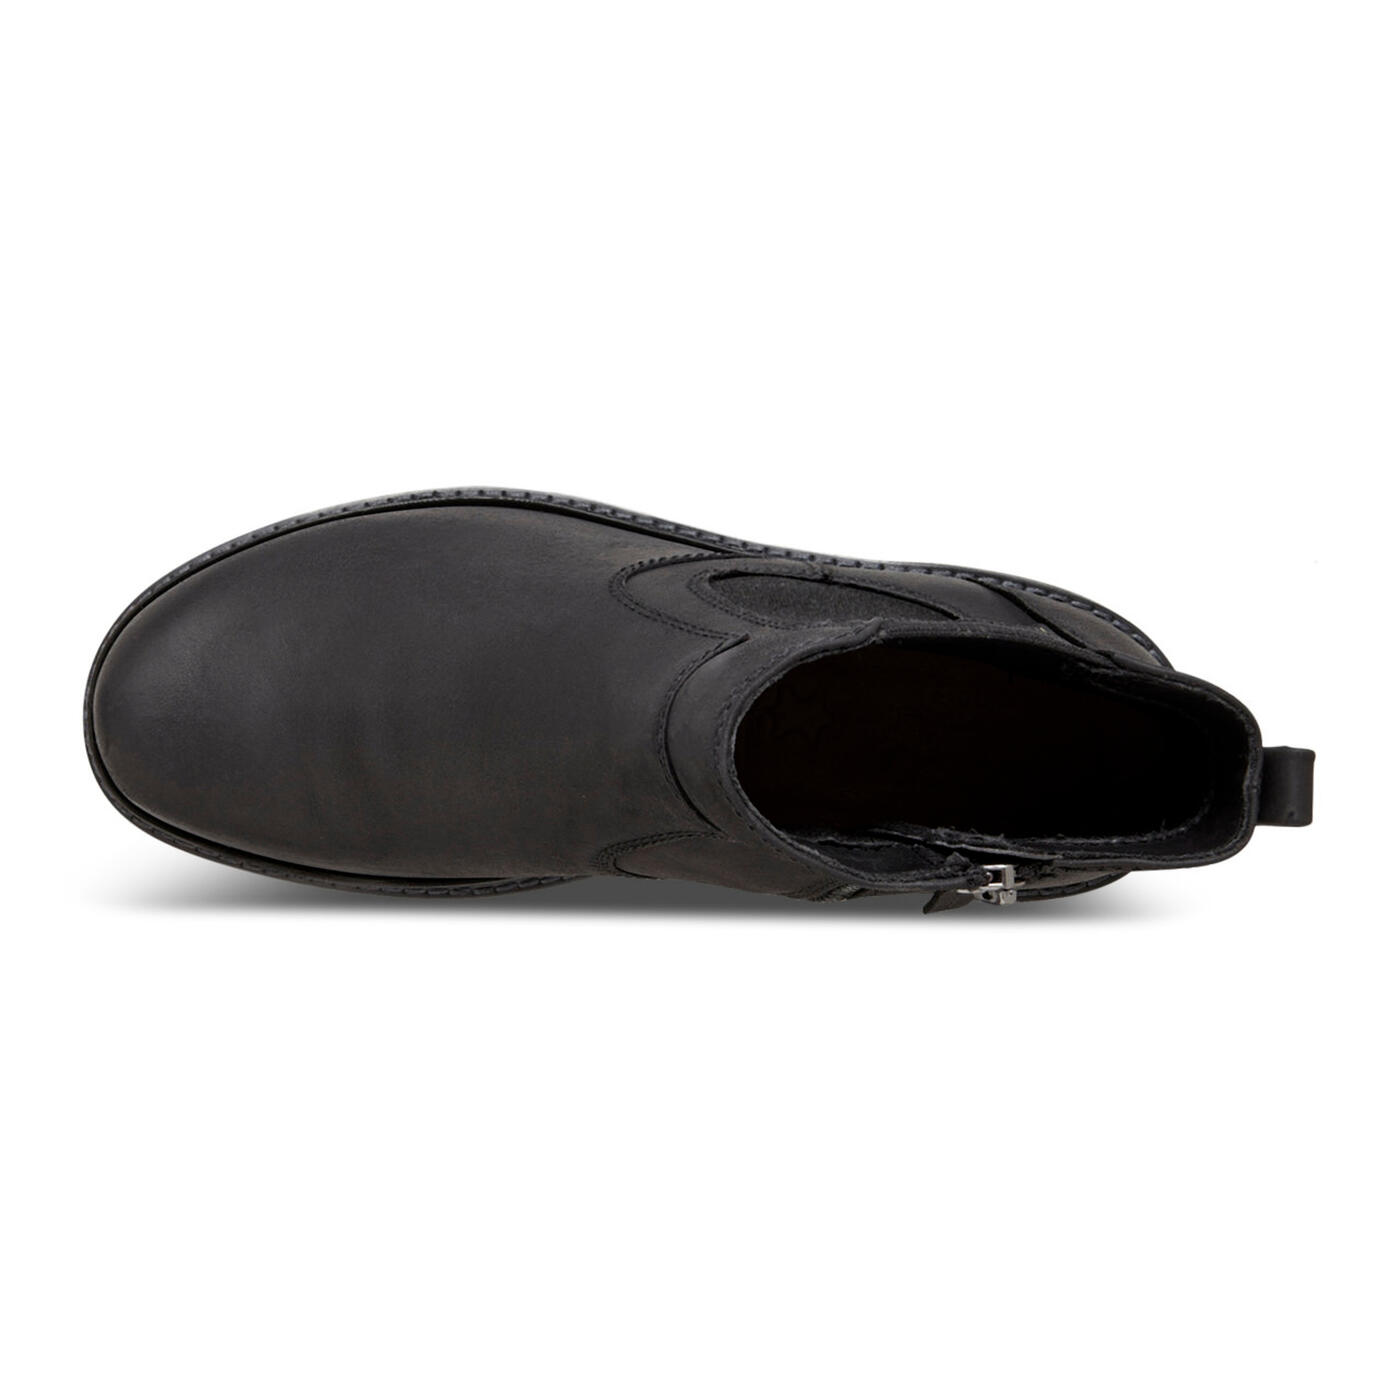 ECCO Turn GTX Chukka Boot | Men's Casual Boots | ECCO® Shoes